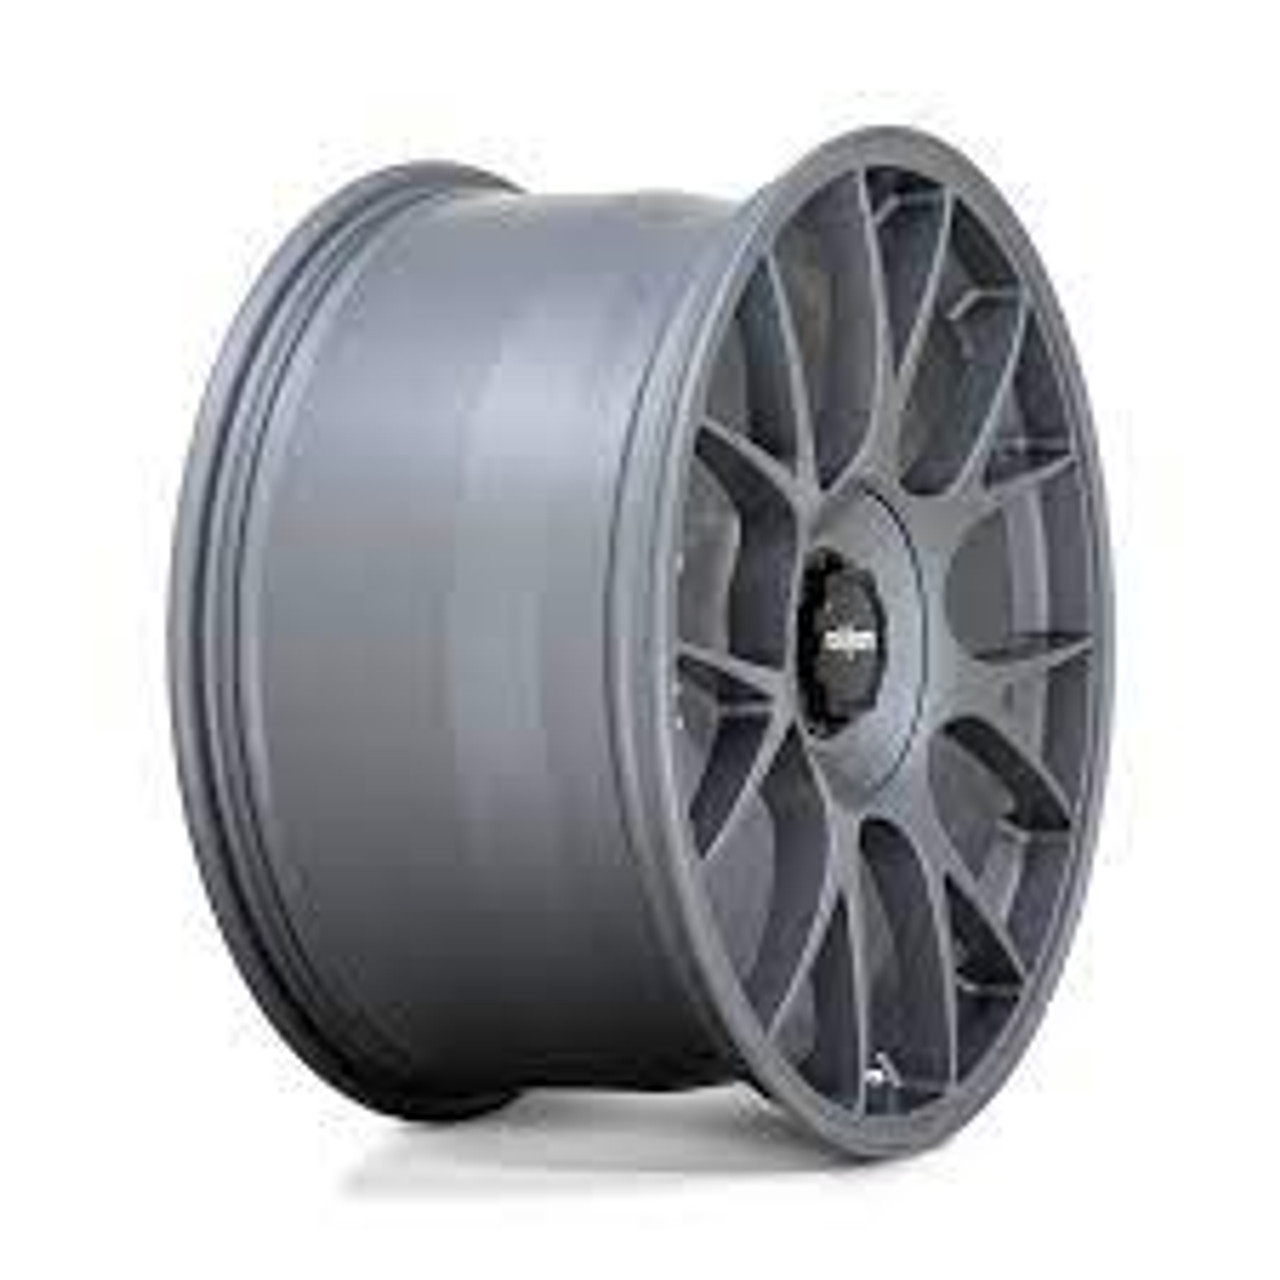 Rotiform R903 TUF Wheel 20x9.5 5x120 22 Offset - Satin Titanium